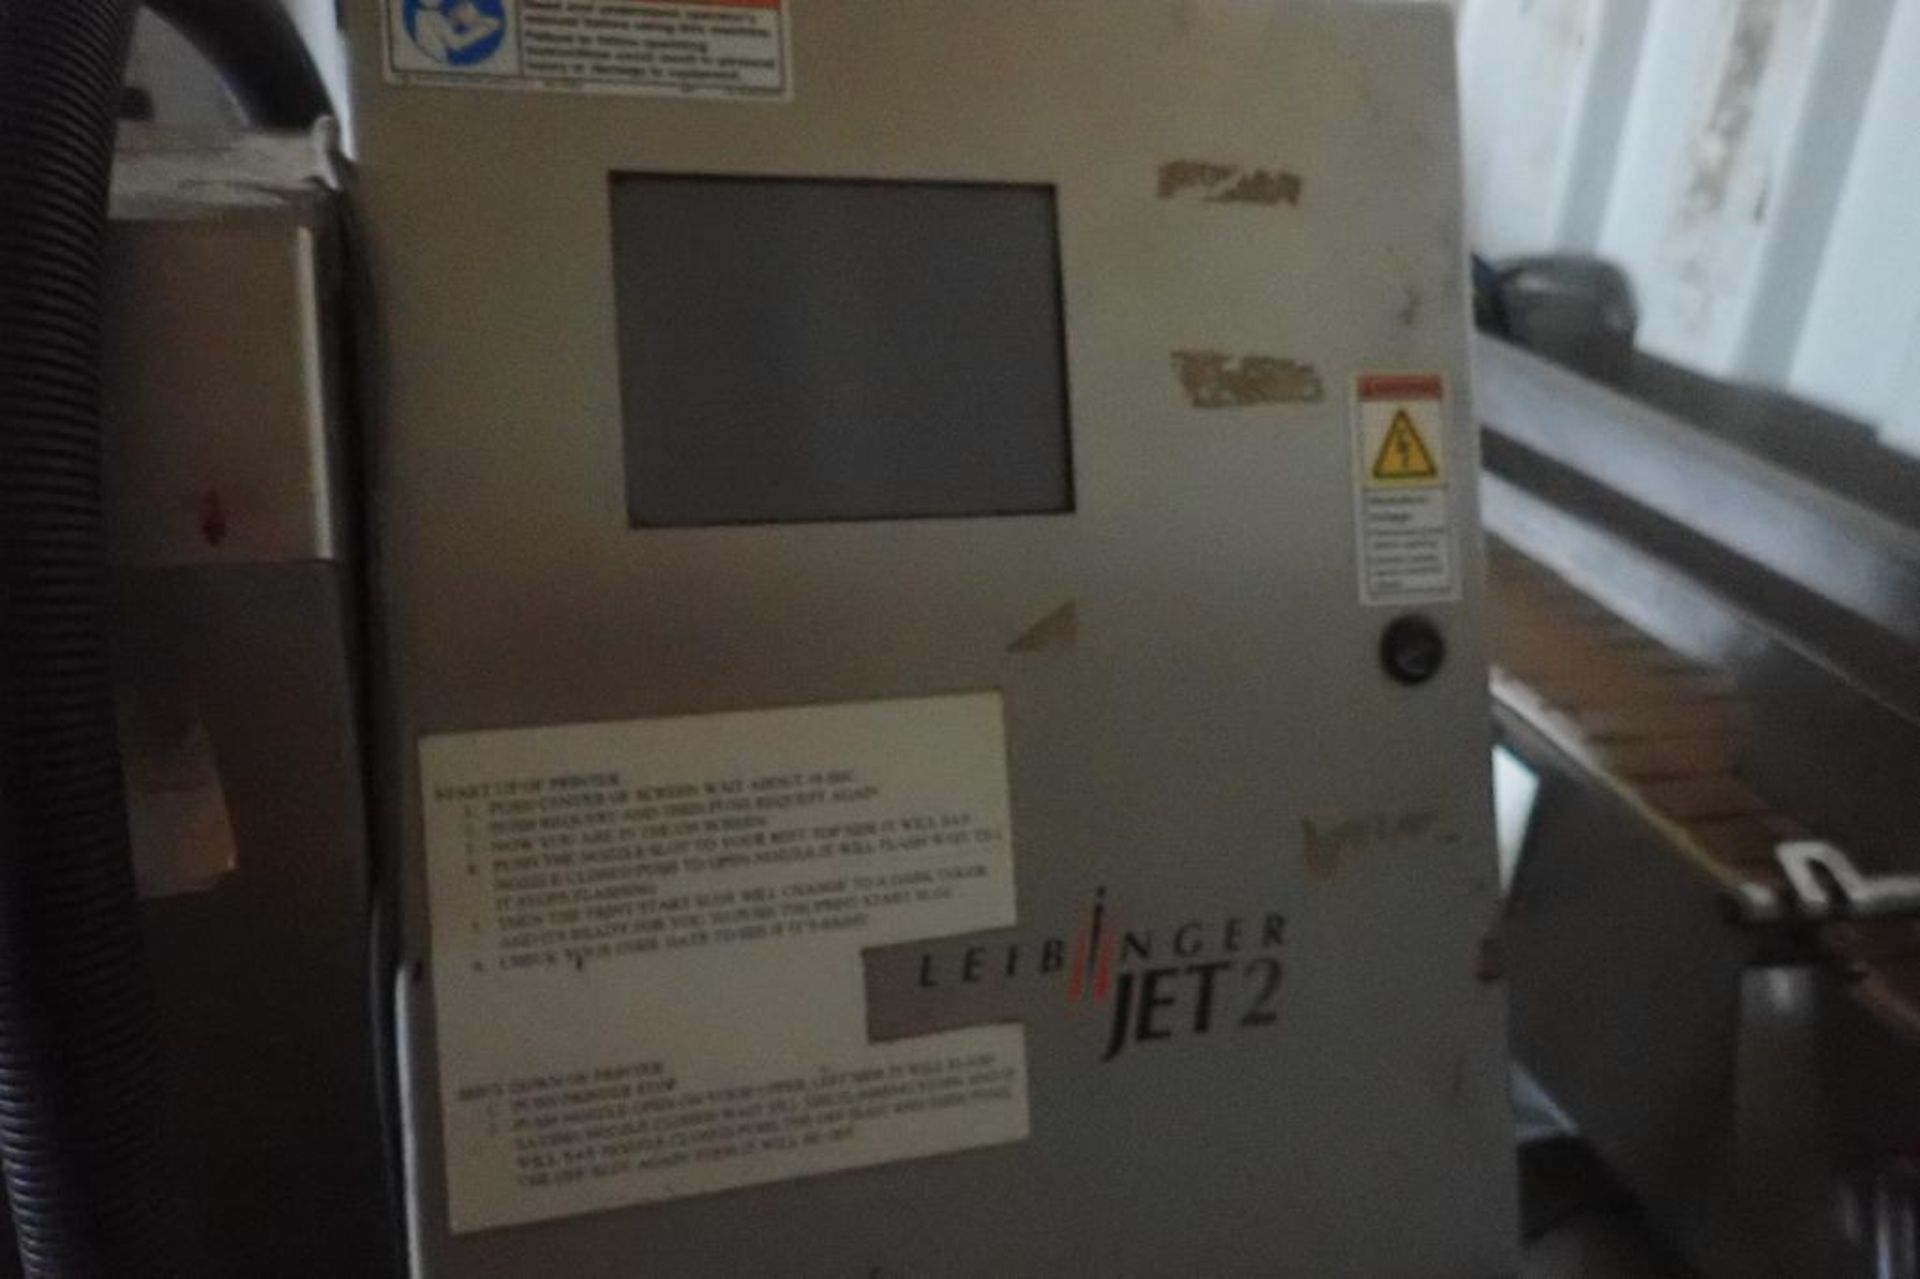 Leibinger Ink Jet Coder, Model Jet 2, on cart. **Rigging Fee: $50** - Image 3 of 4